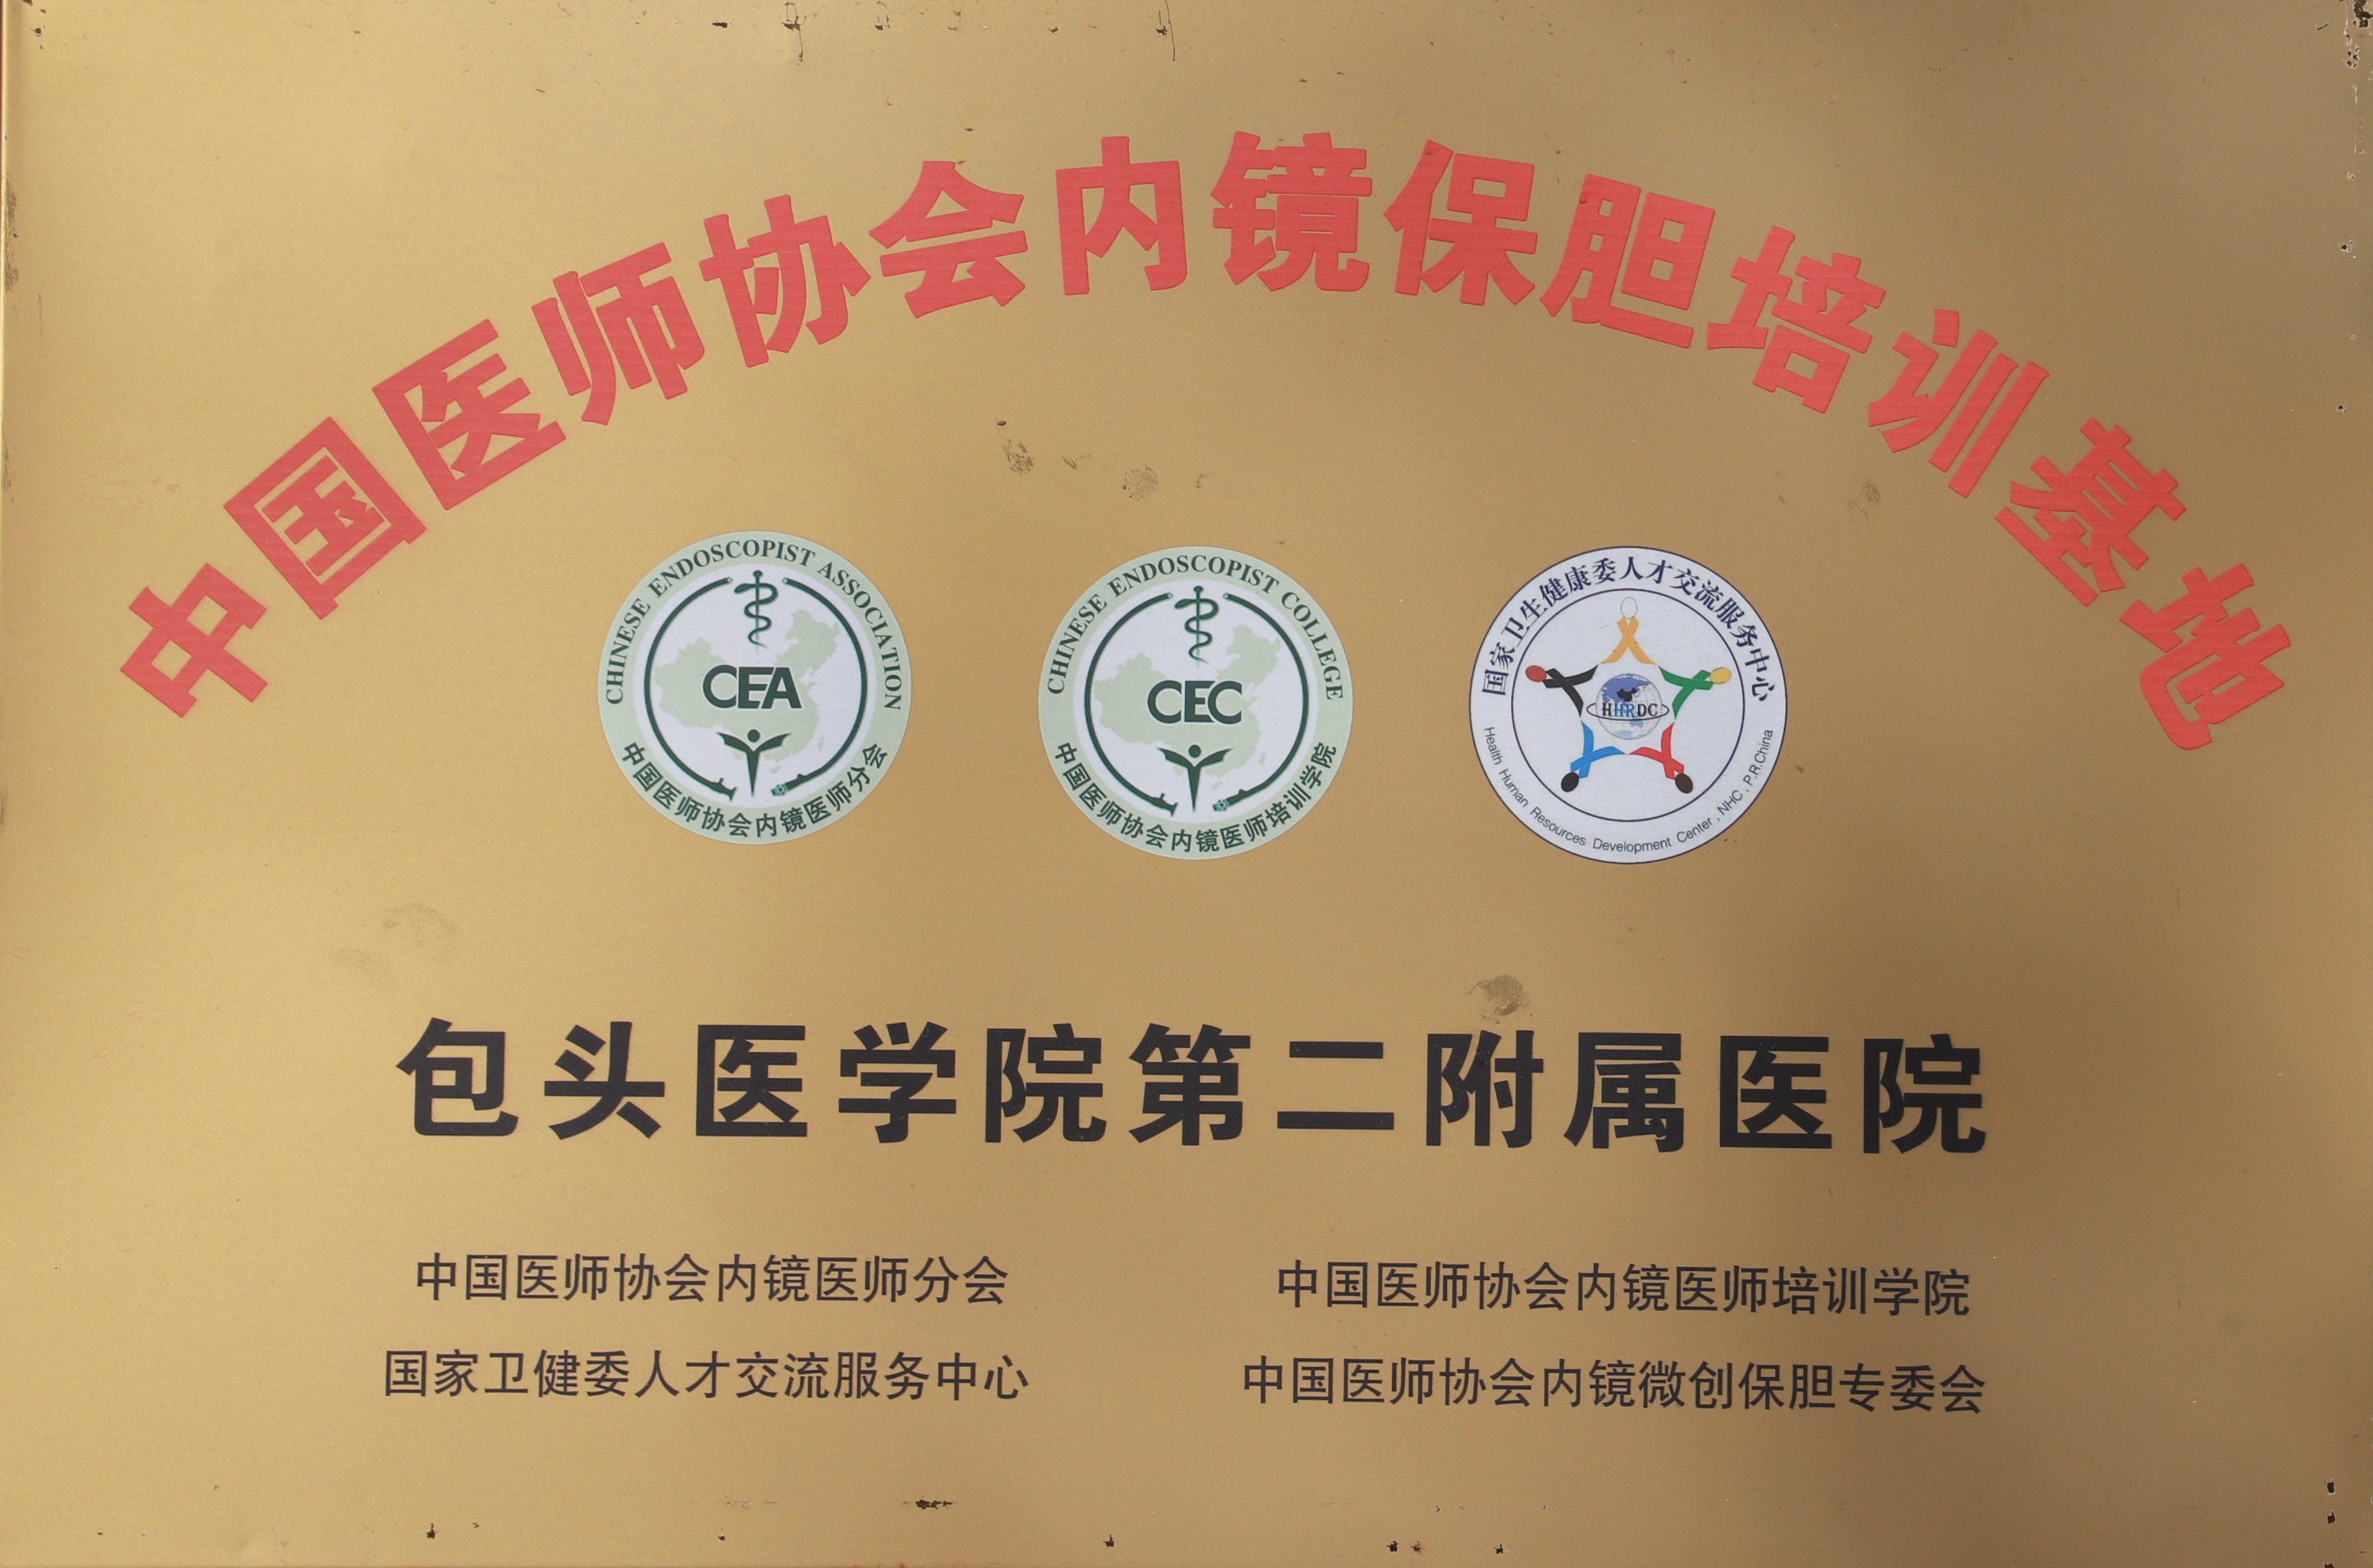 中国医师协会内镜保胆培训基地